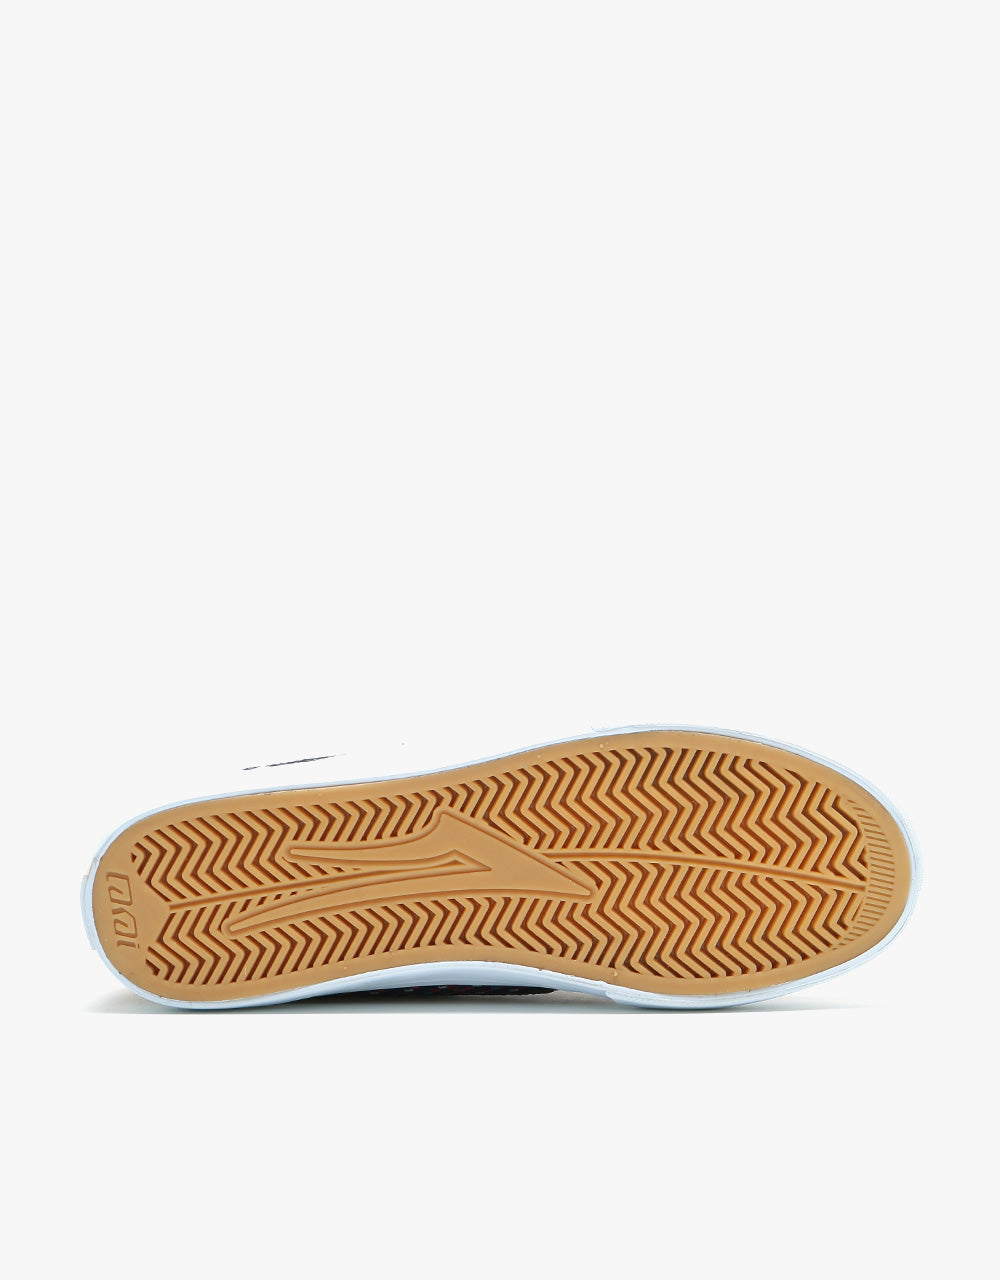 Lakai Griffin Textile Skate Shoes - Blue/Orange Checkered